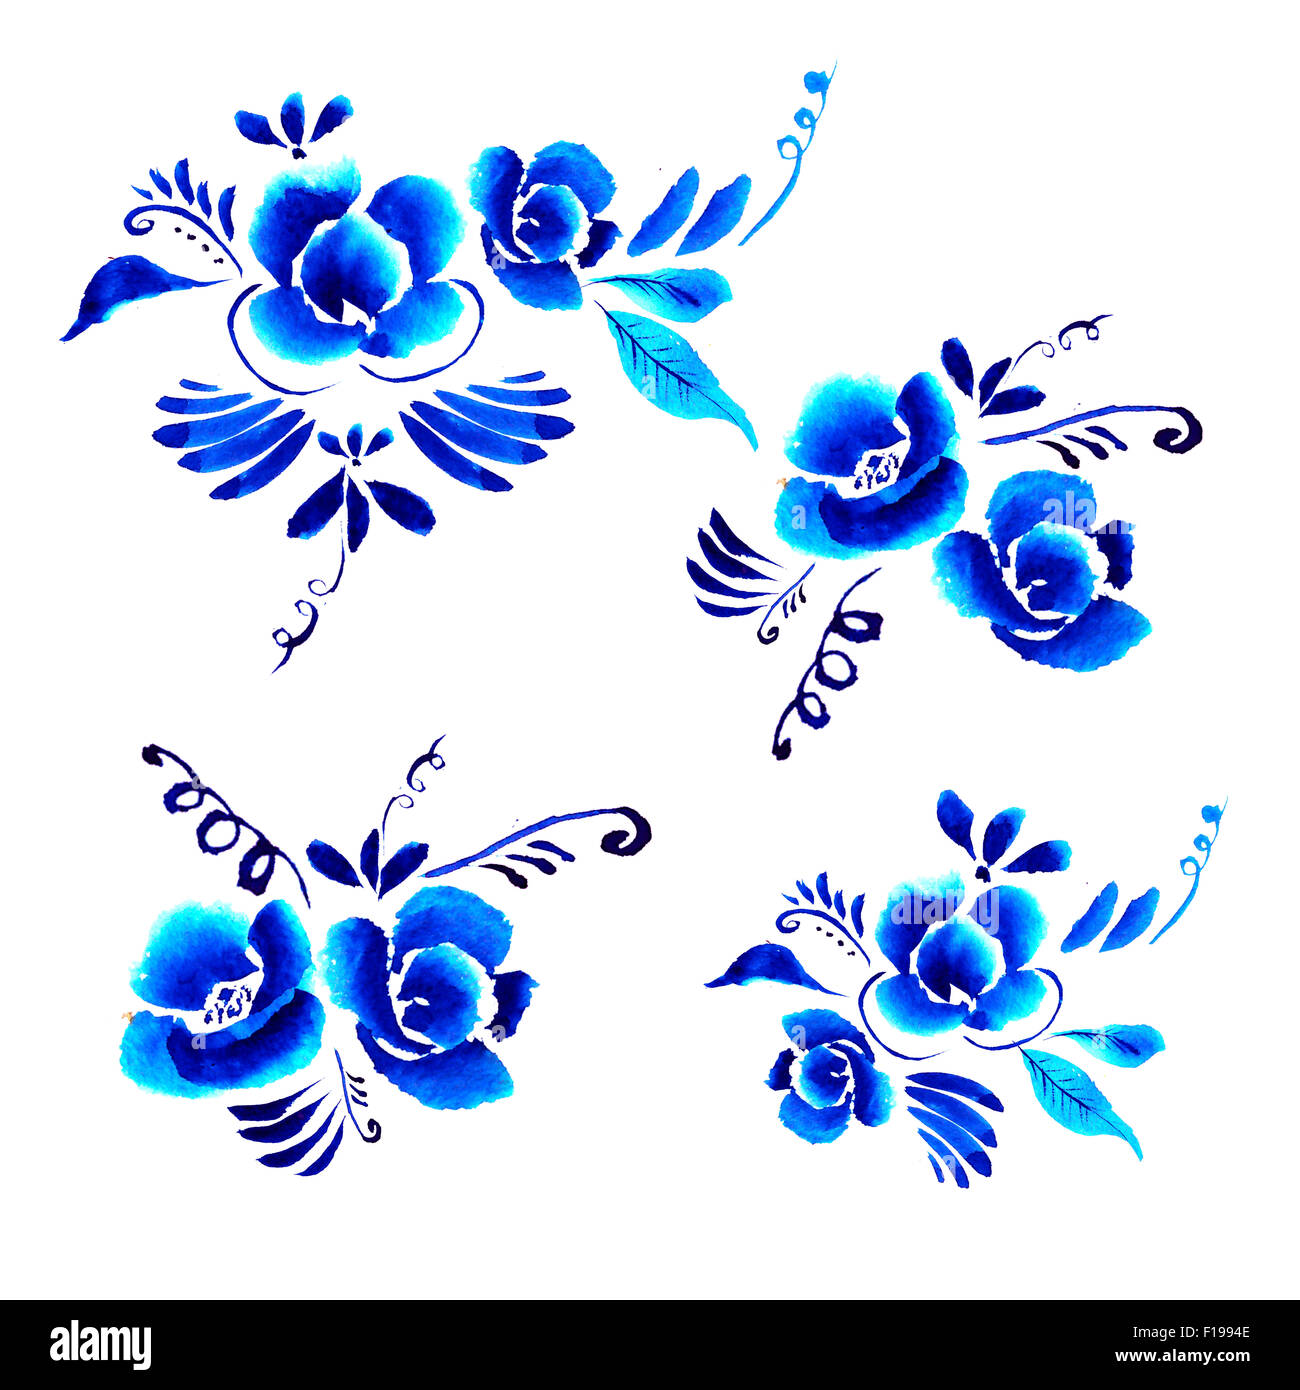 Abstract floral background pattern, avec l'art populaire de fleurs, bleu blanc gjel ornement. Peut être utilisé pour la bannière, carte, affiche, inv Banque D'Images